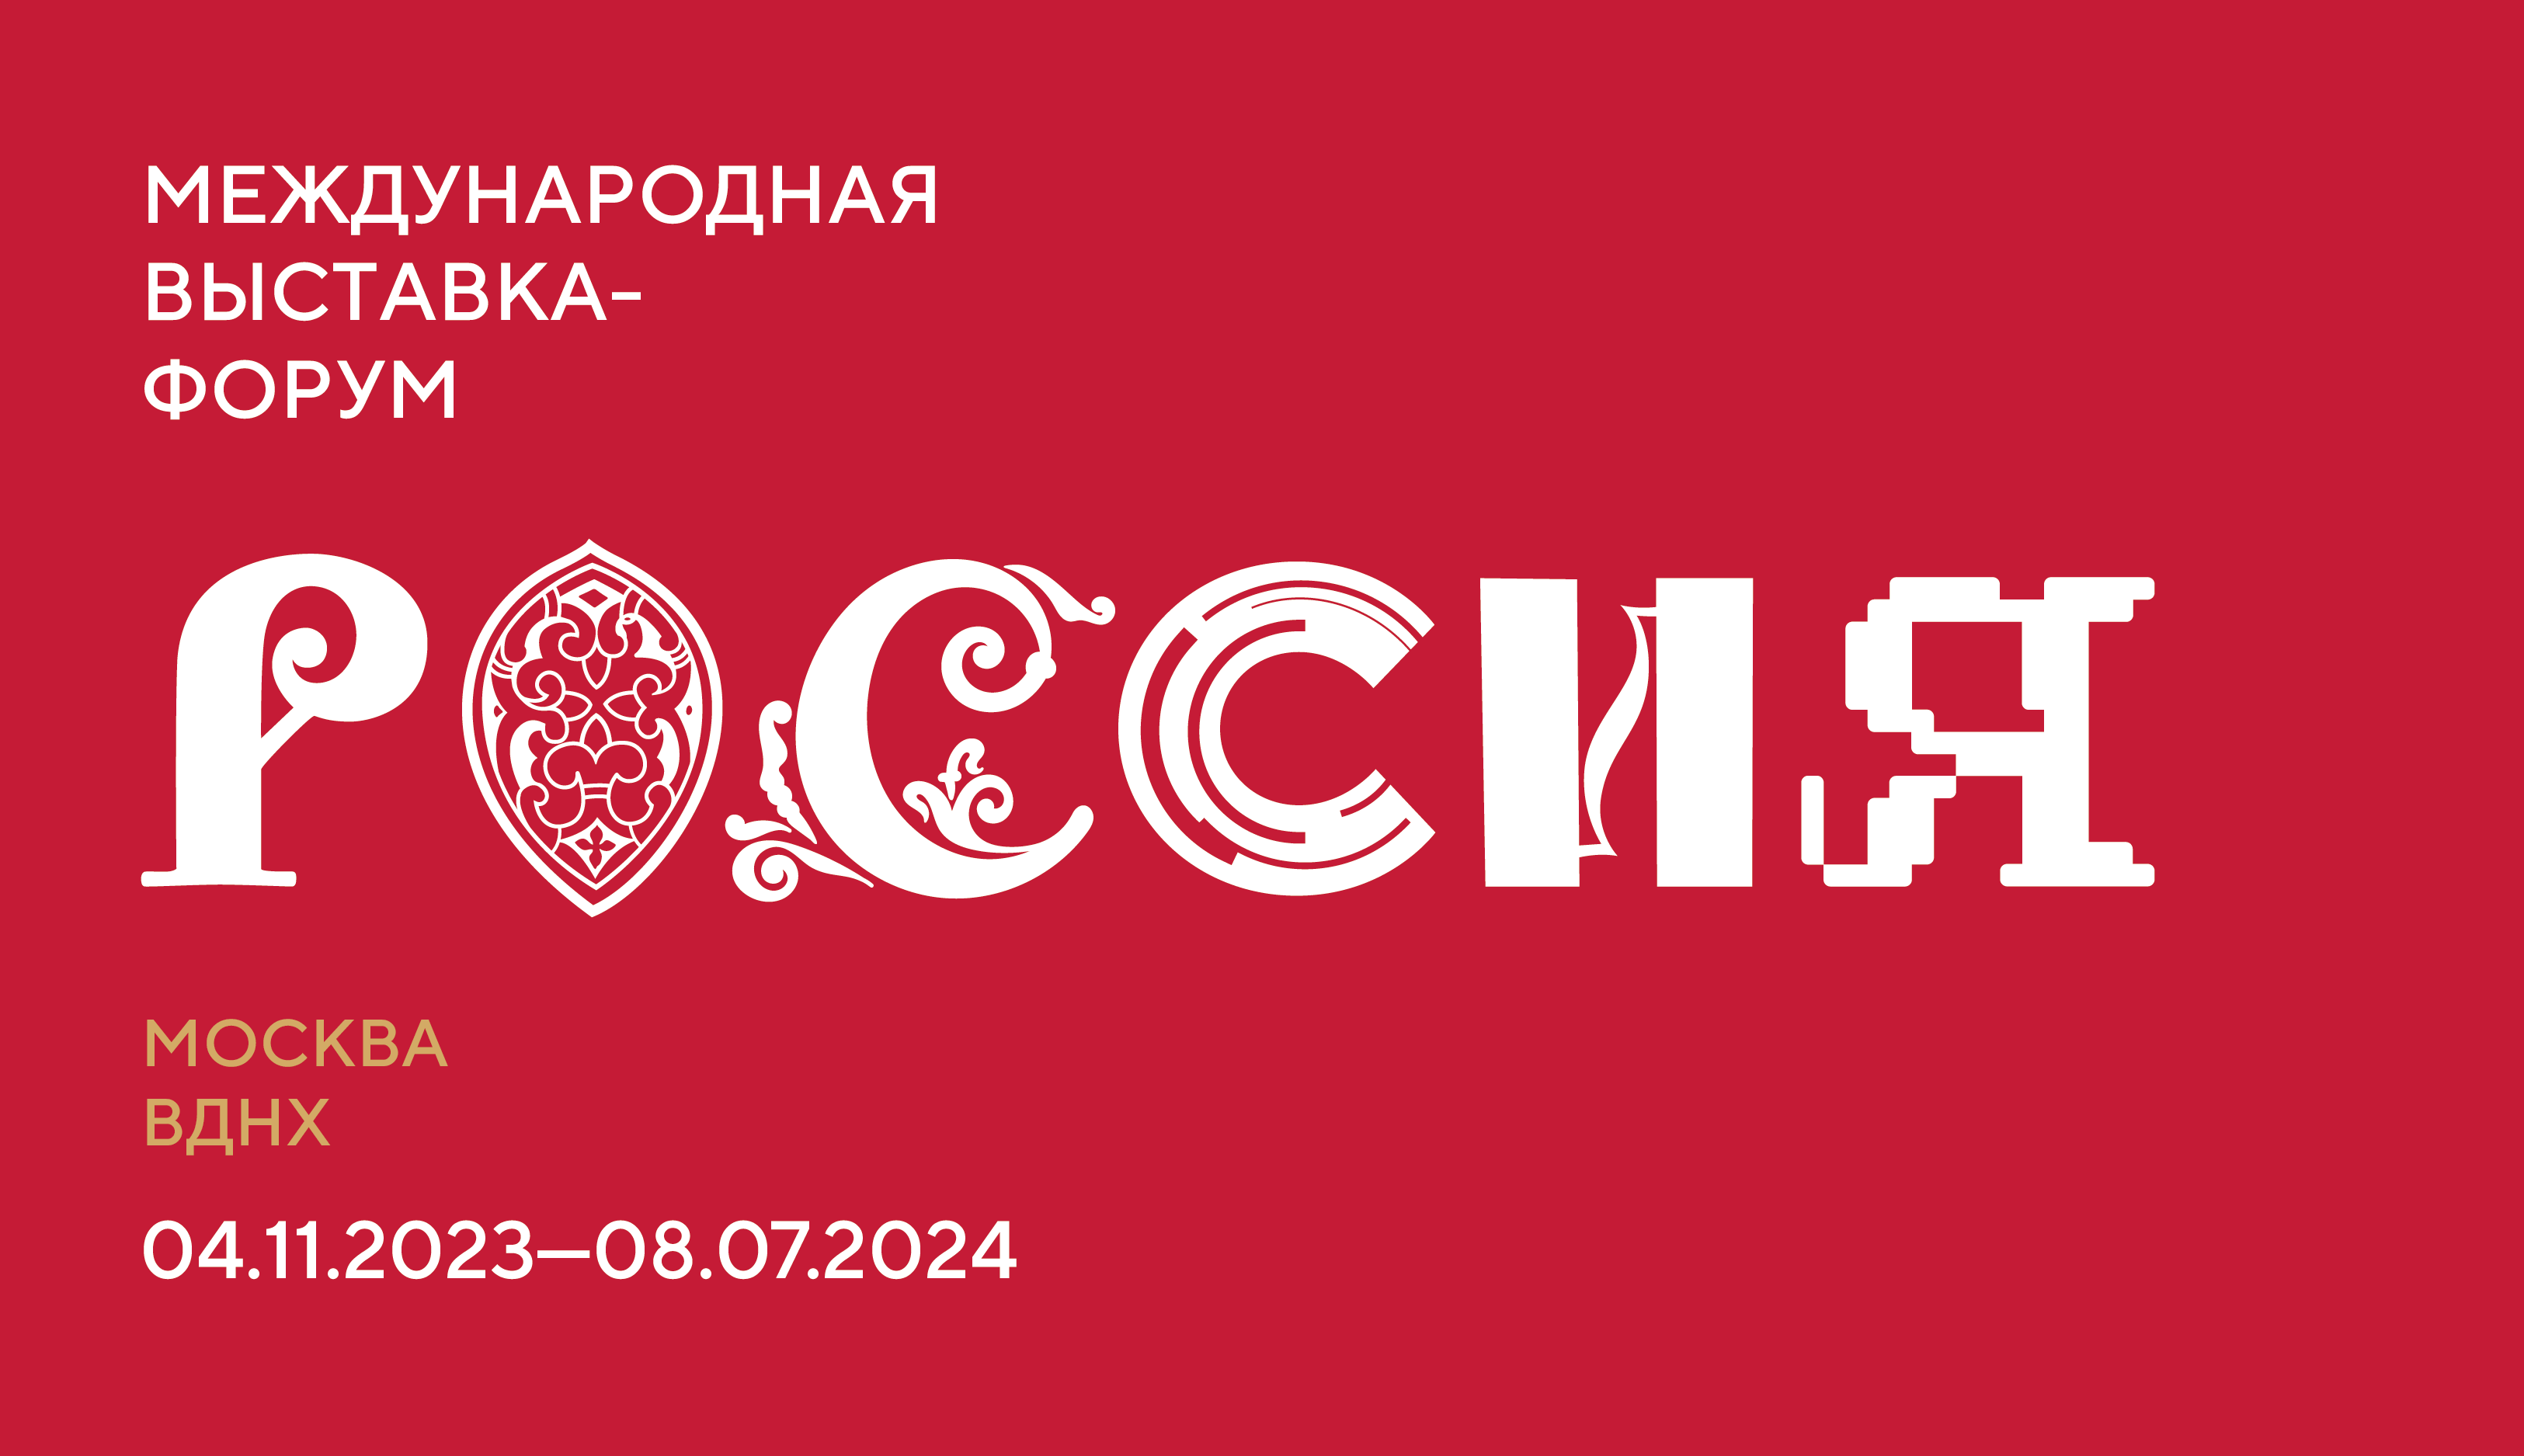 4 ноября  – 8 июля. Москва. ВДНХ. Международная выставка-форум «Россия»